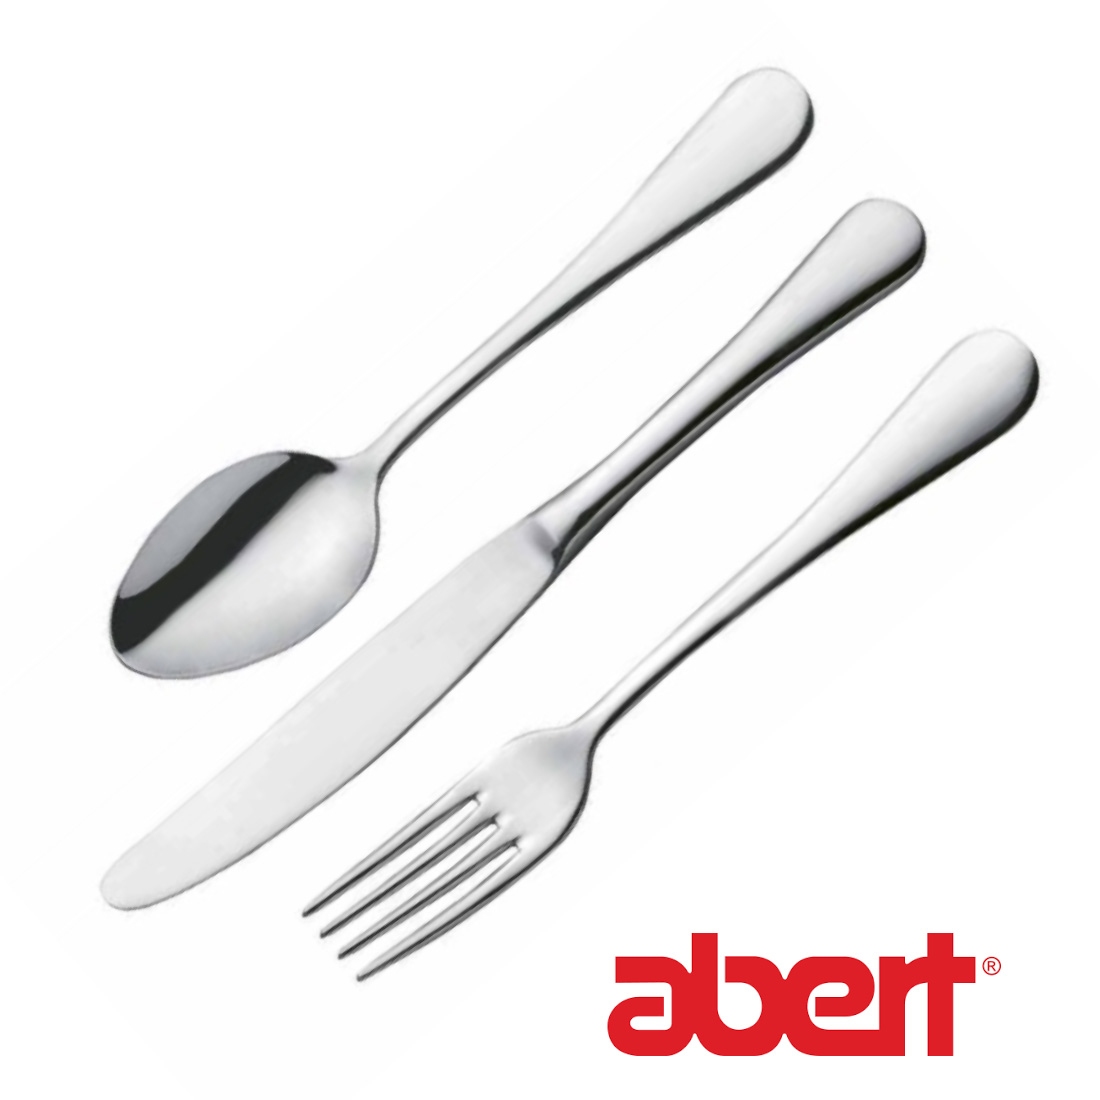 Abert Cutlery